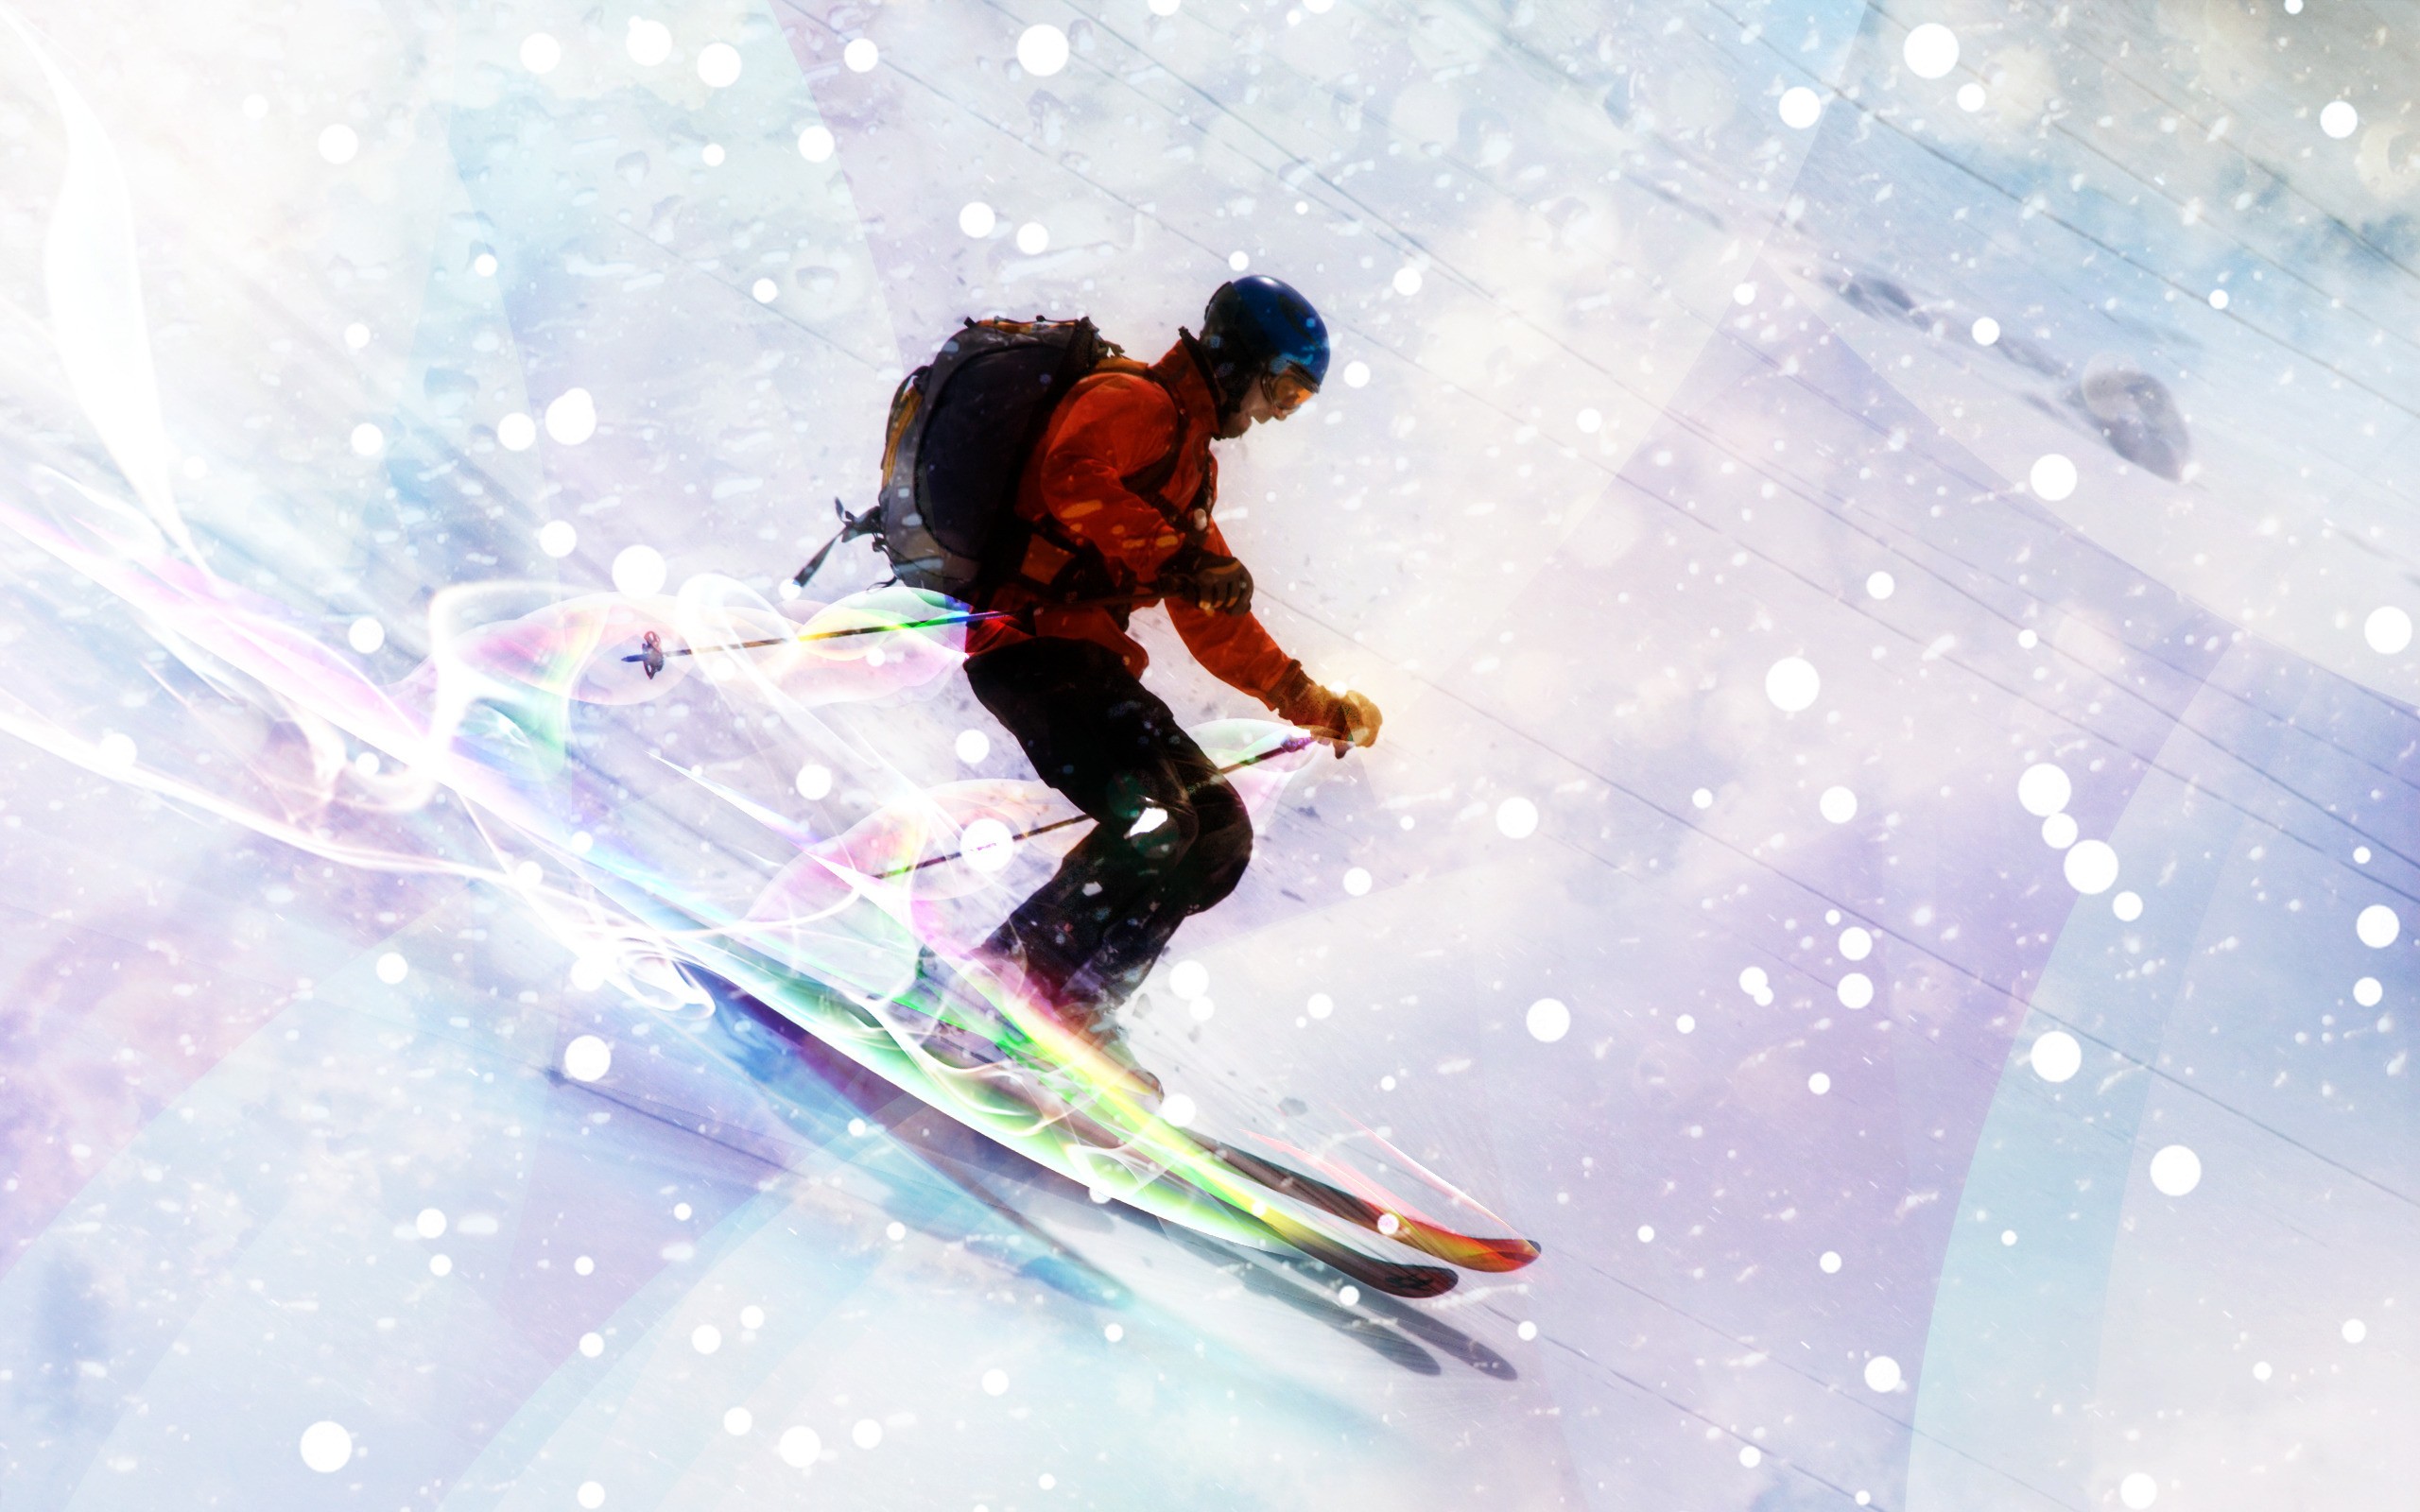 Скачать обои бесплатно Виды Спорта, Катание На Лыжах картинка на рабочий стол ПК